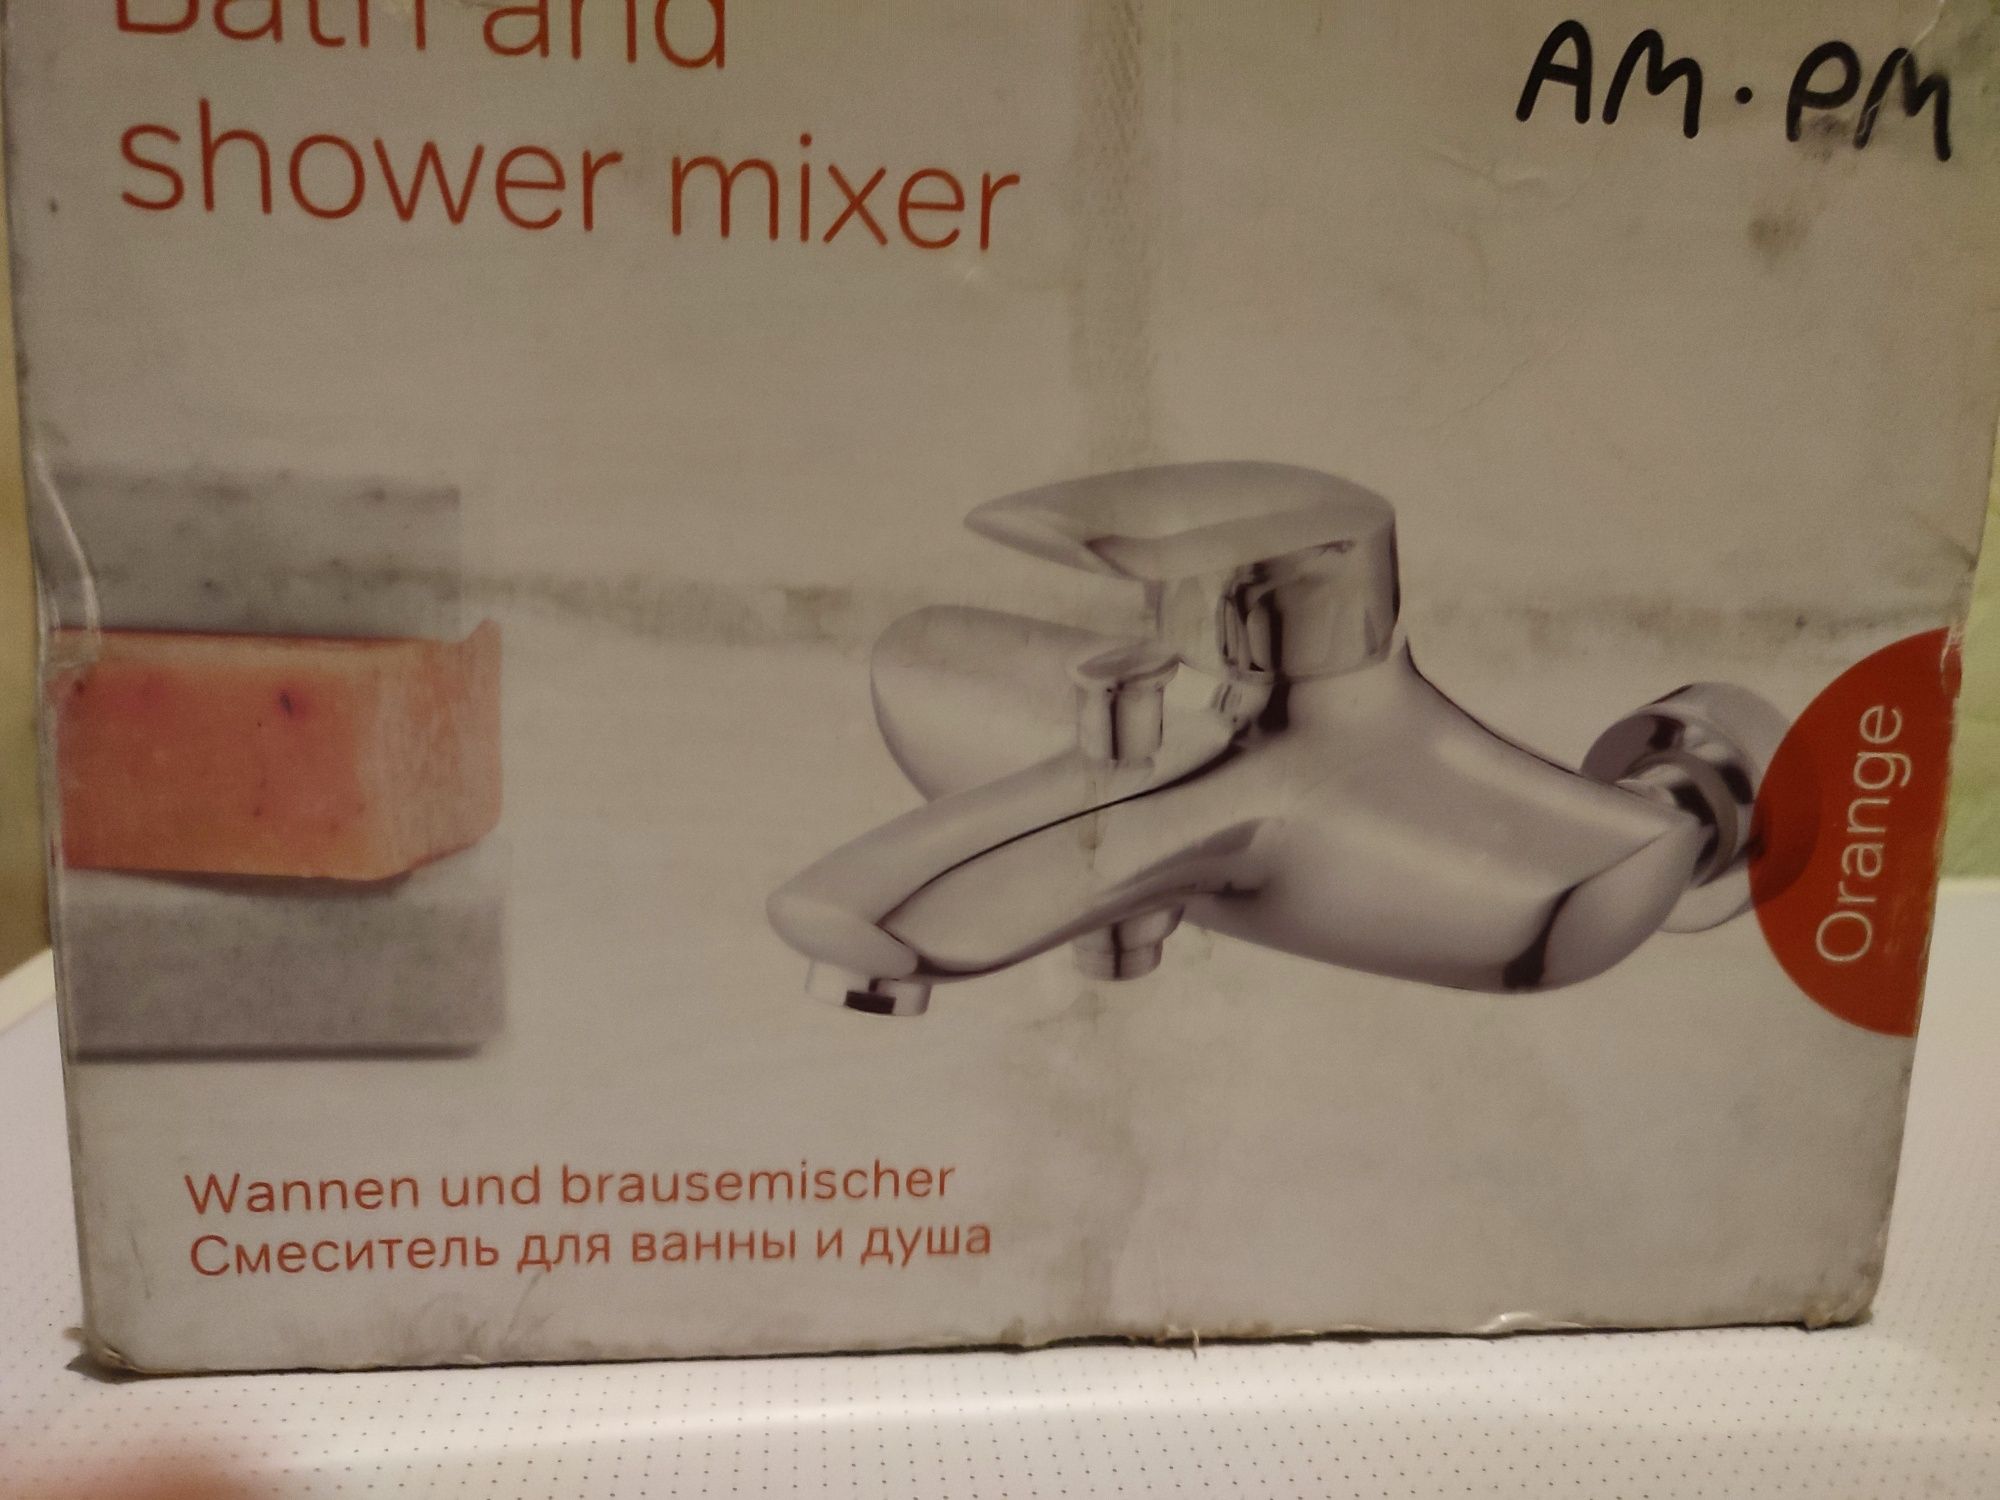 Смеситель для ванны AM. PM Orange, Германия